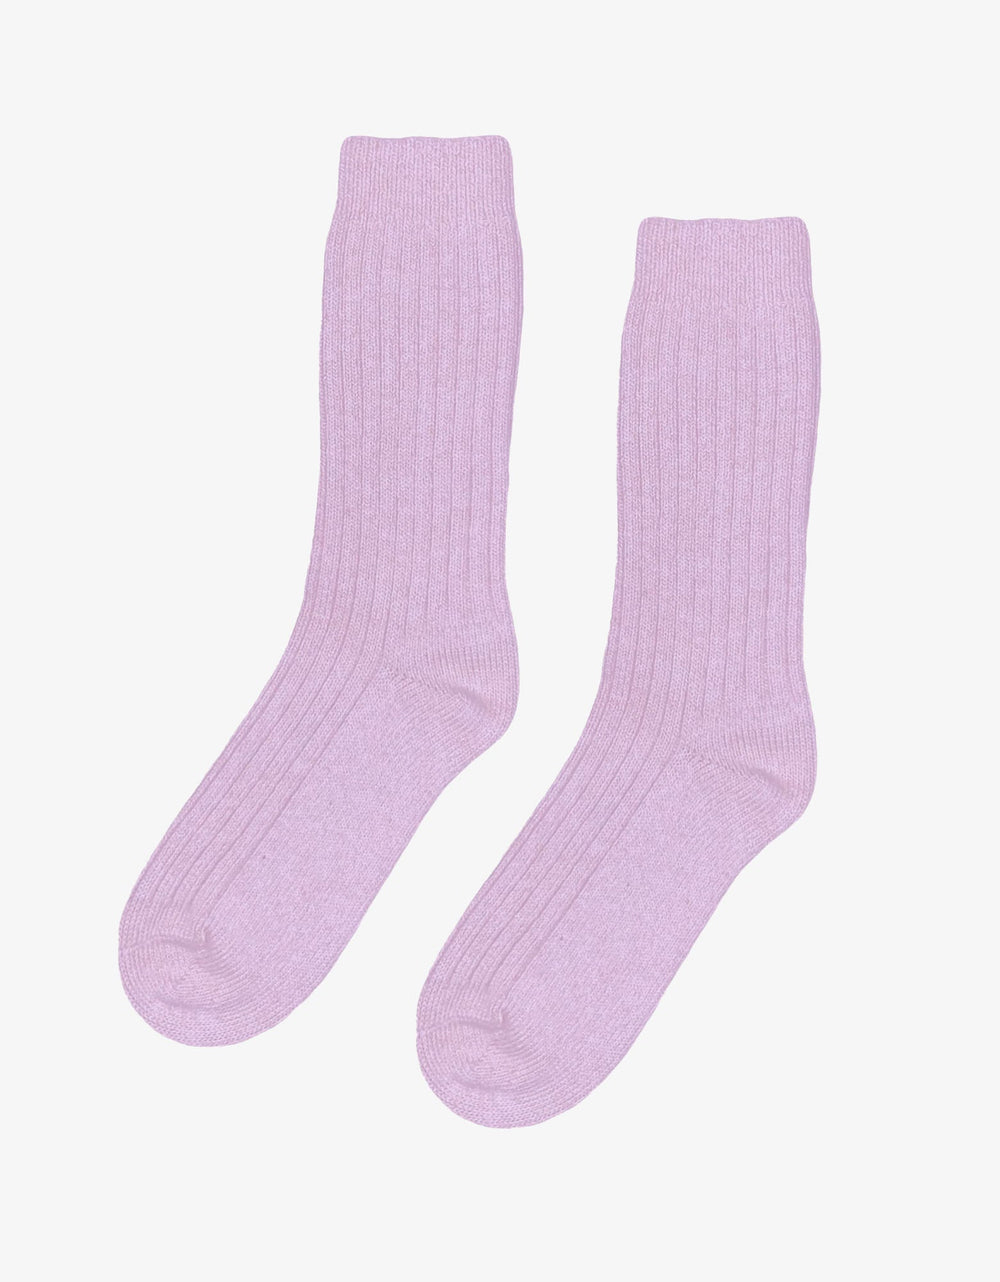 Soft Lavender Merino Wool Blend Socks